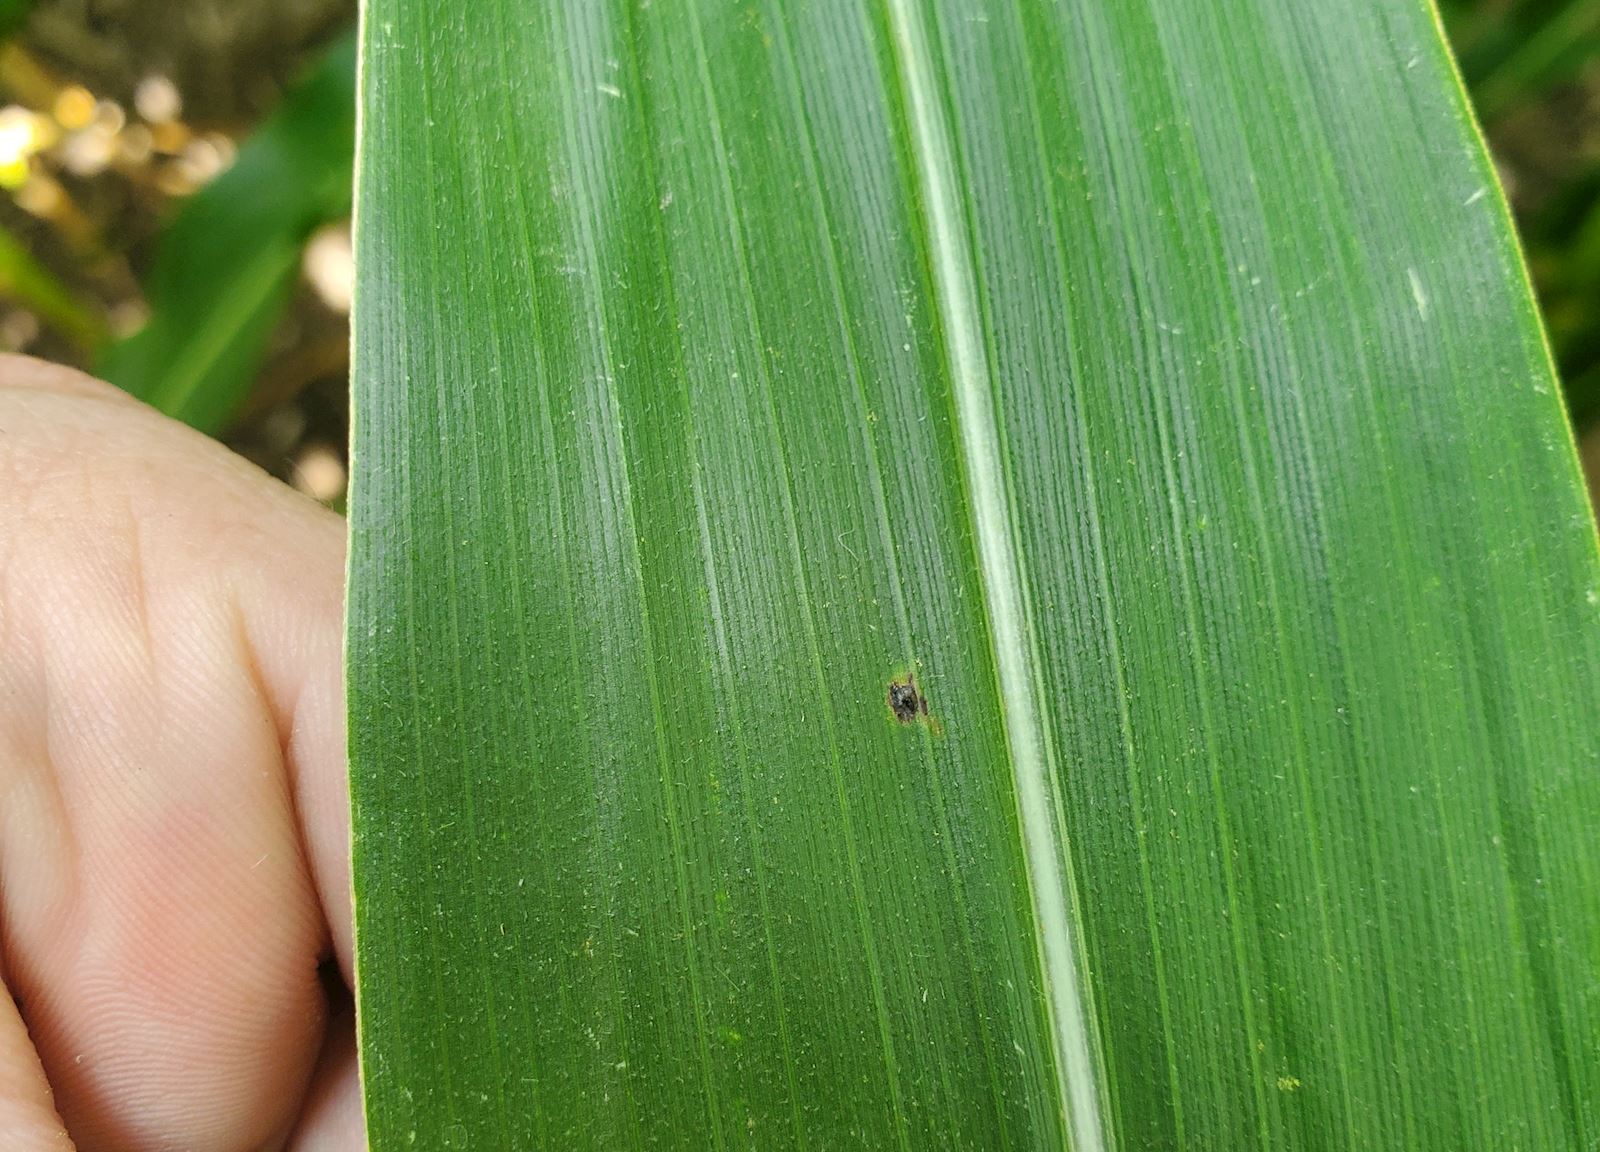 Tar Spot on Corn Leaf